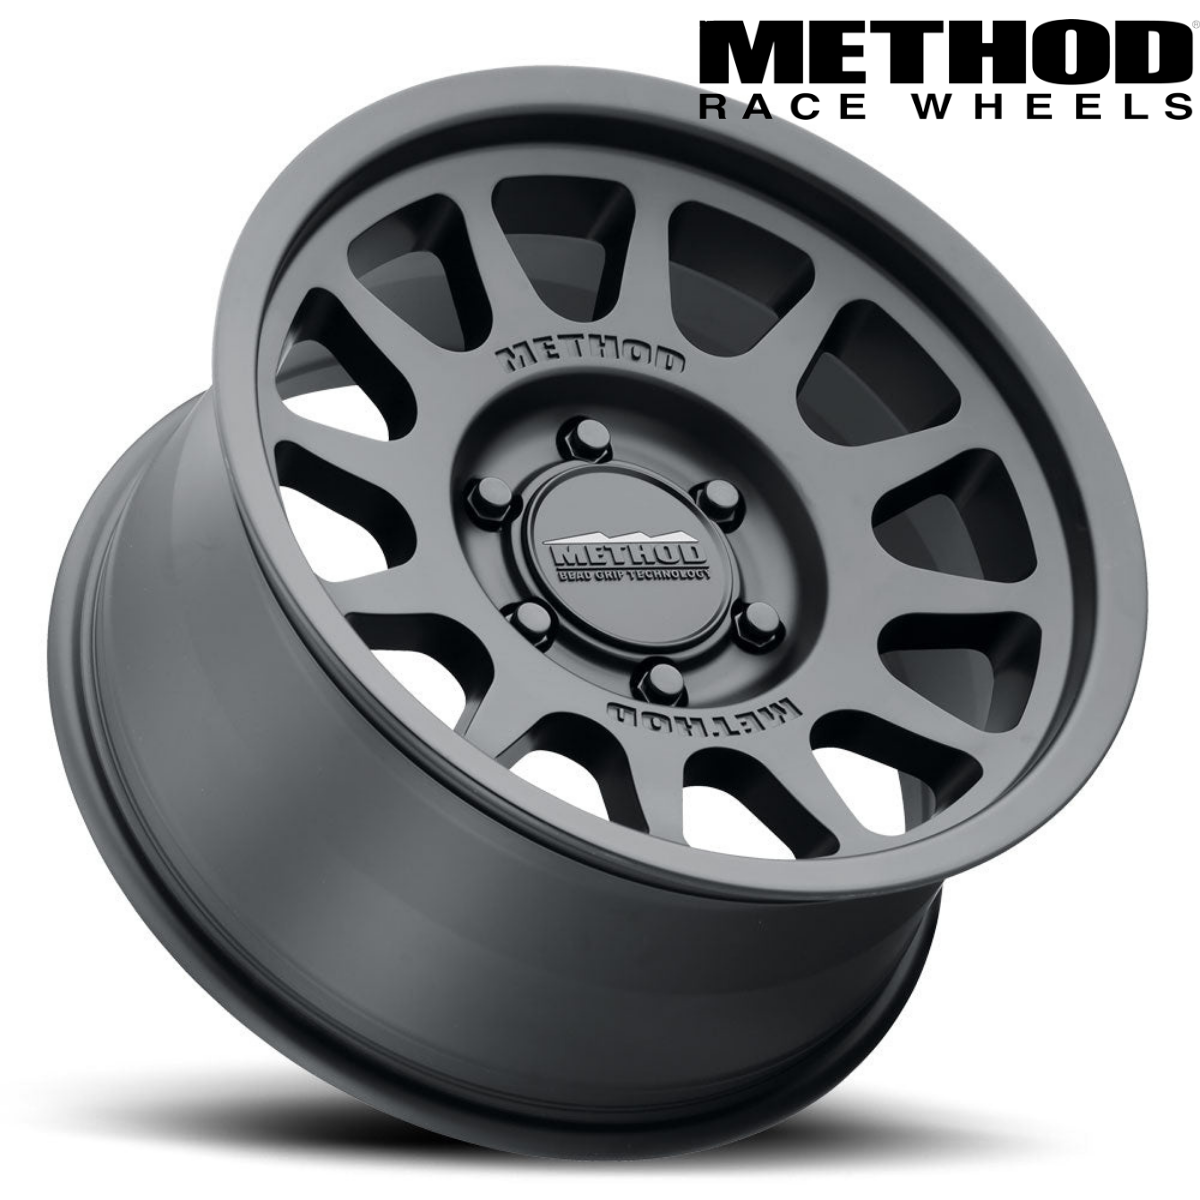 Method Race Wheels 703 Bead Grip wheel